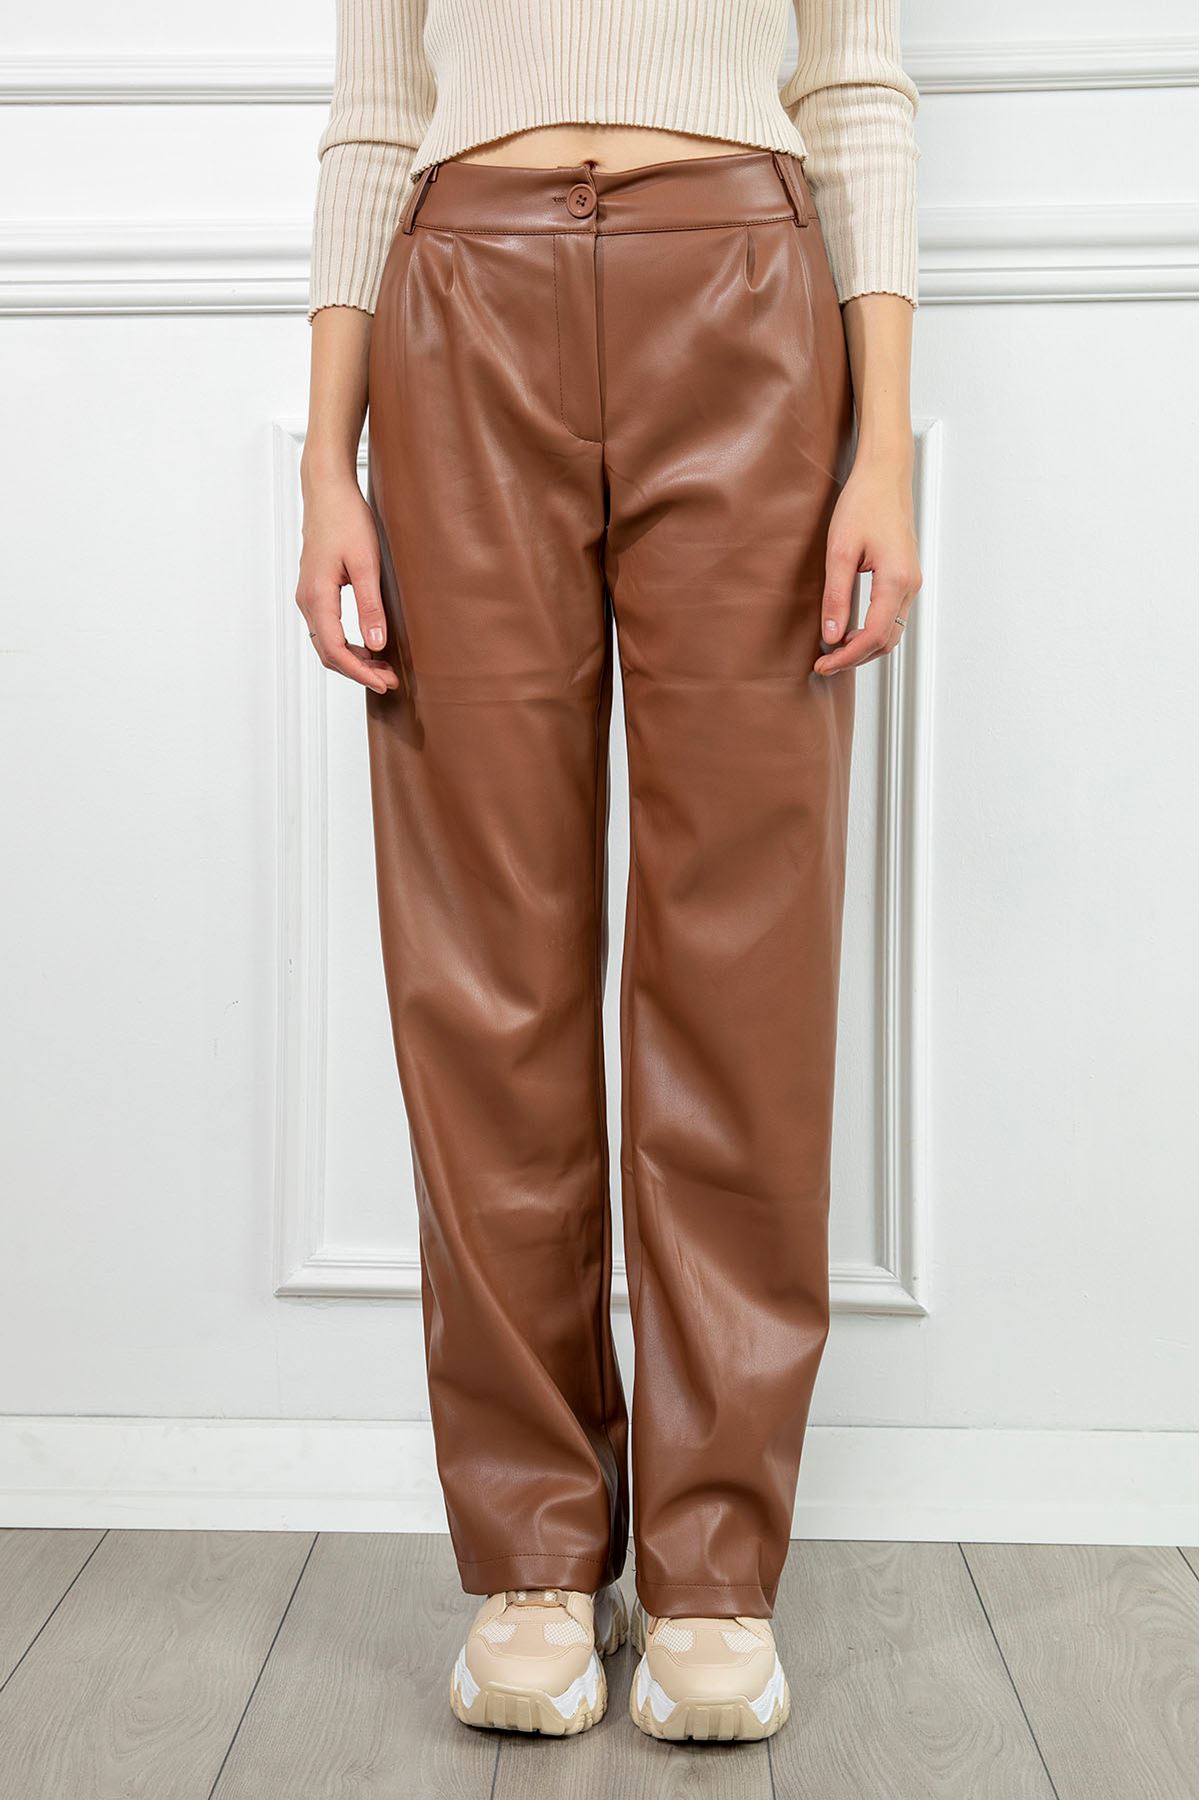 Zara Leather Fabric Long Wide Fit Wide Leg Women'S Trouser - Light Brown